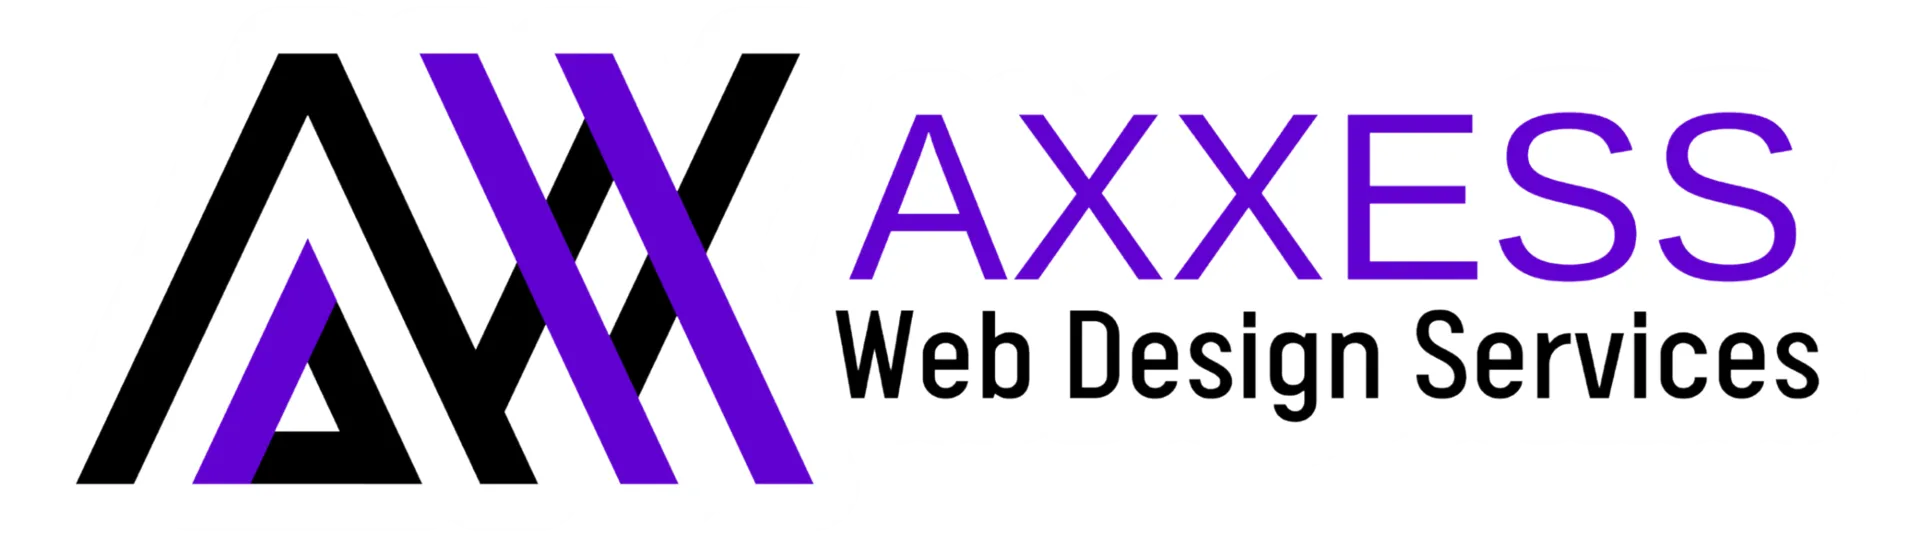 Axxess Web Design Services